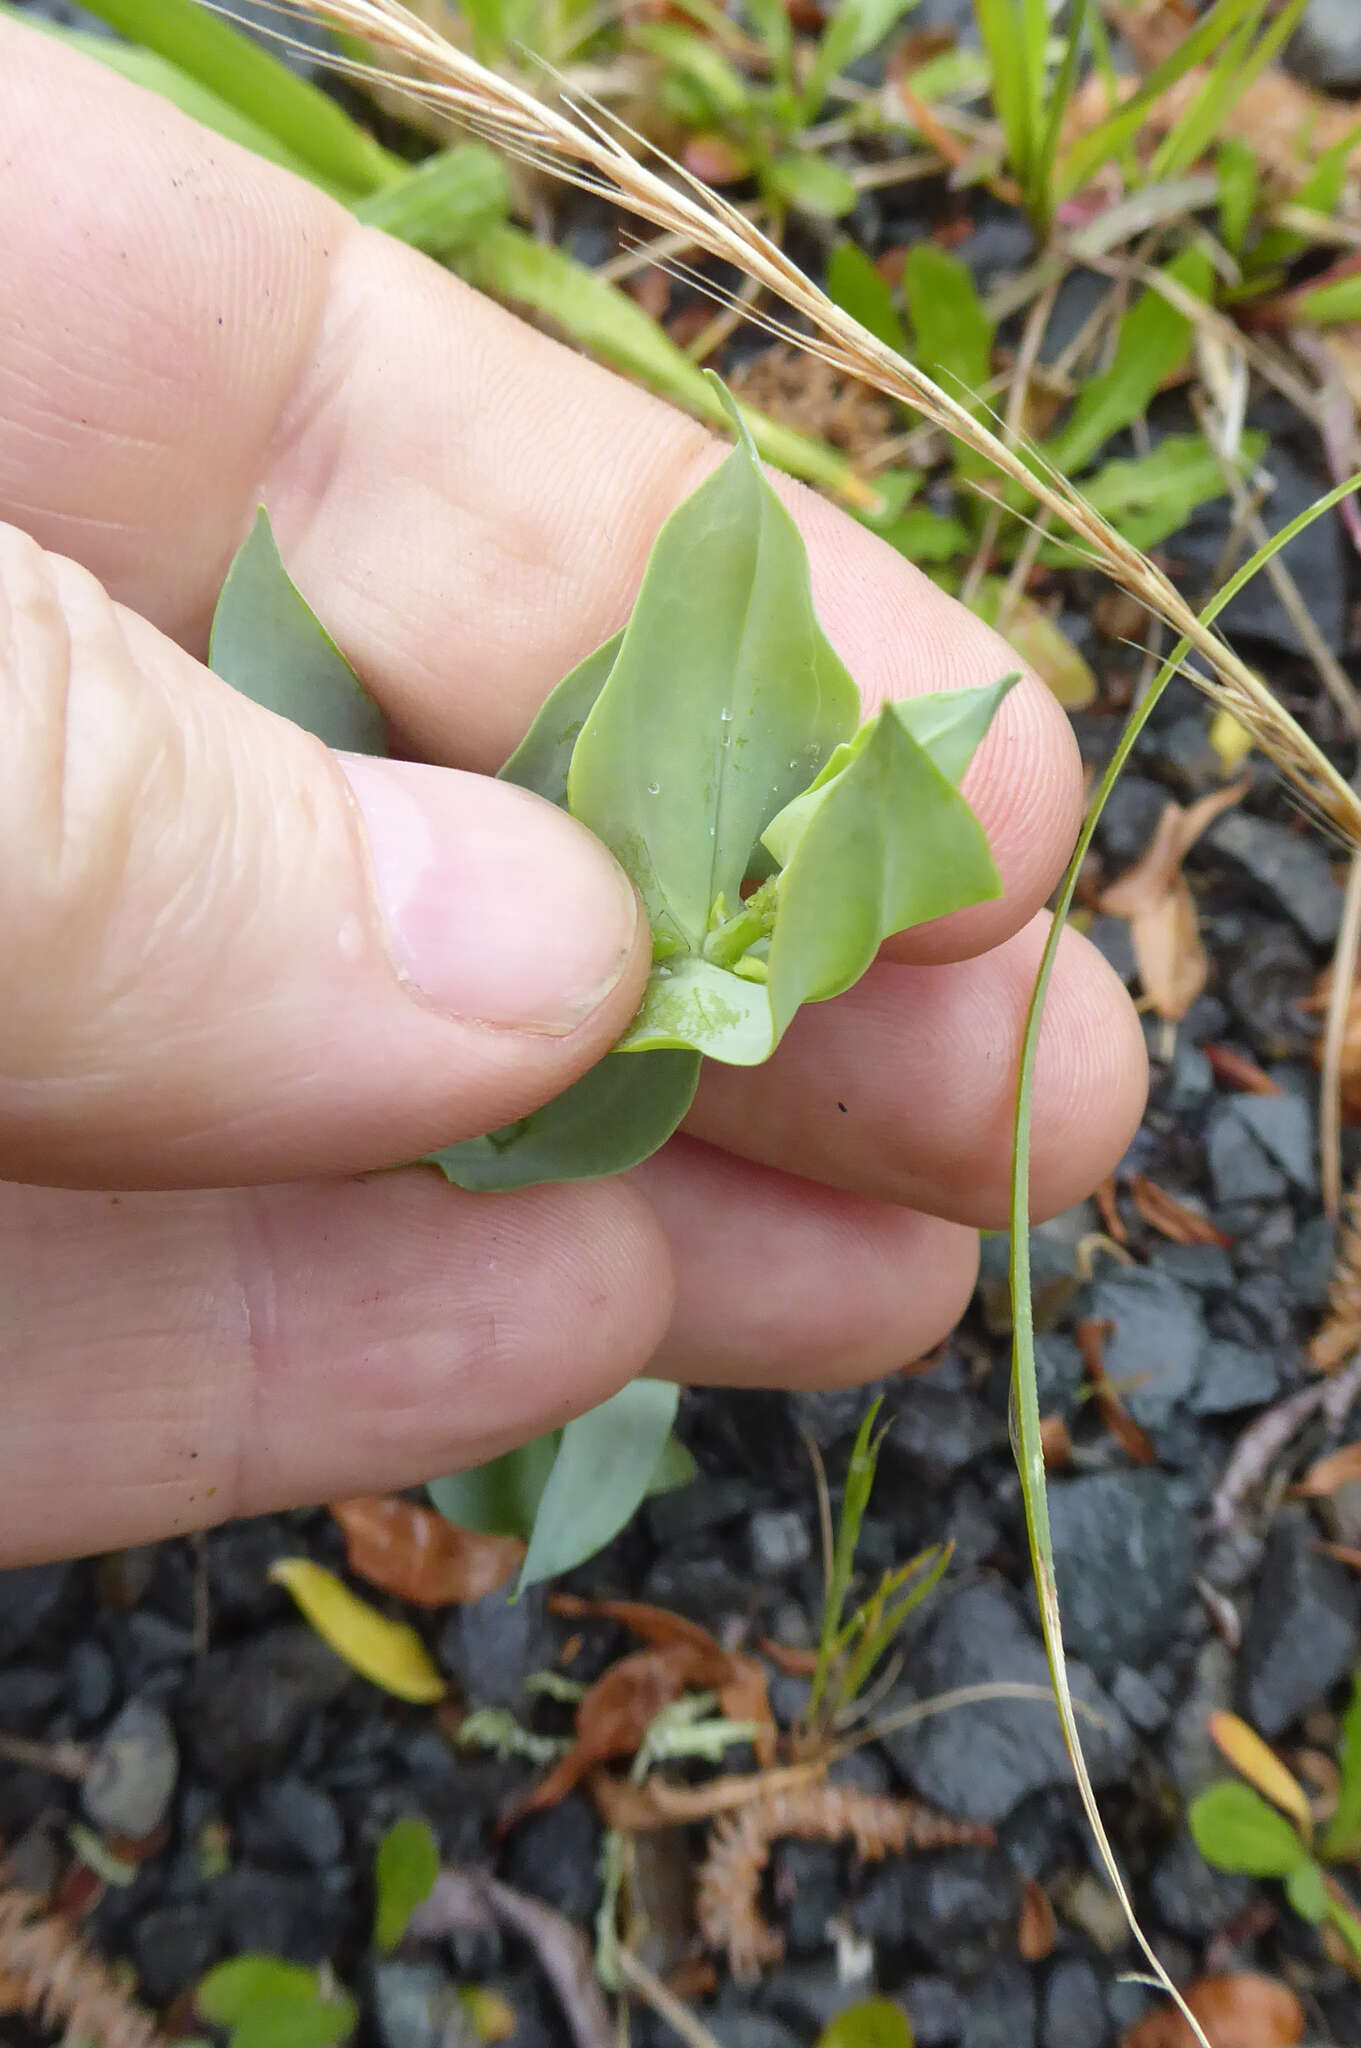 Image de Blackstonia perfoliata subsp. perfoliata